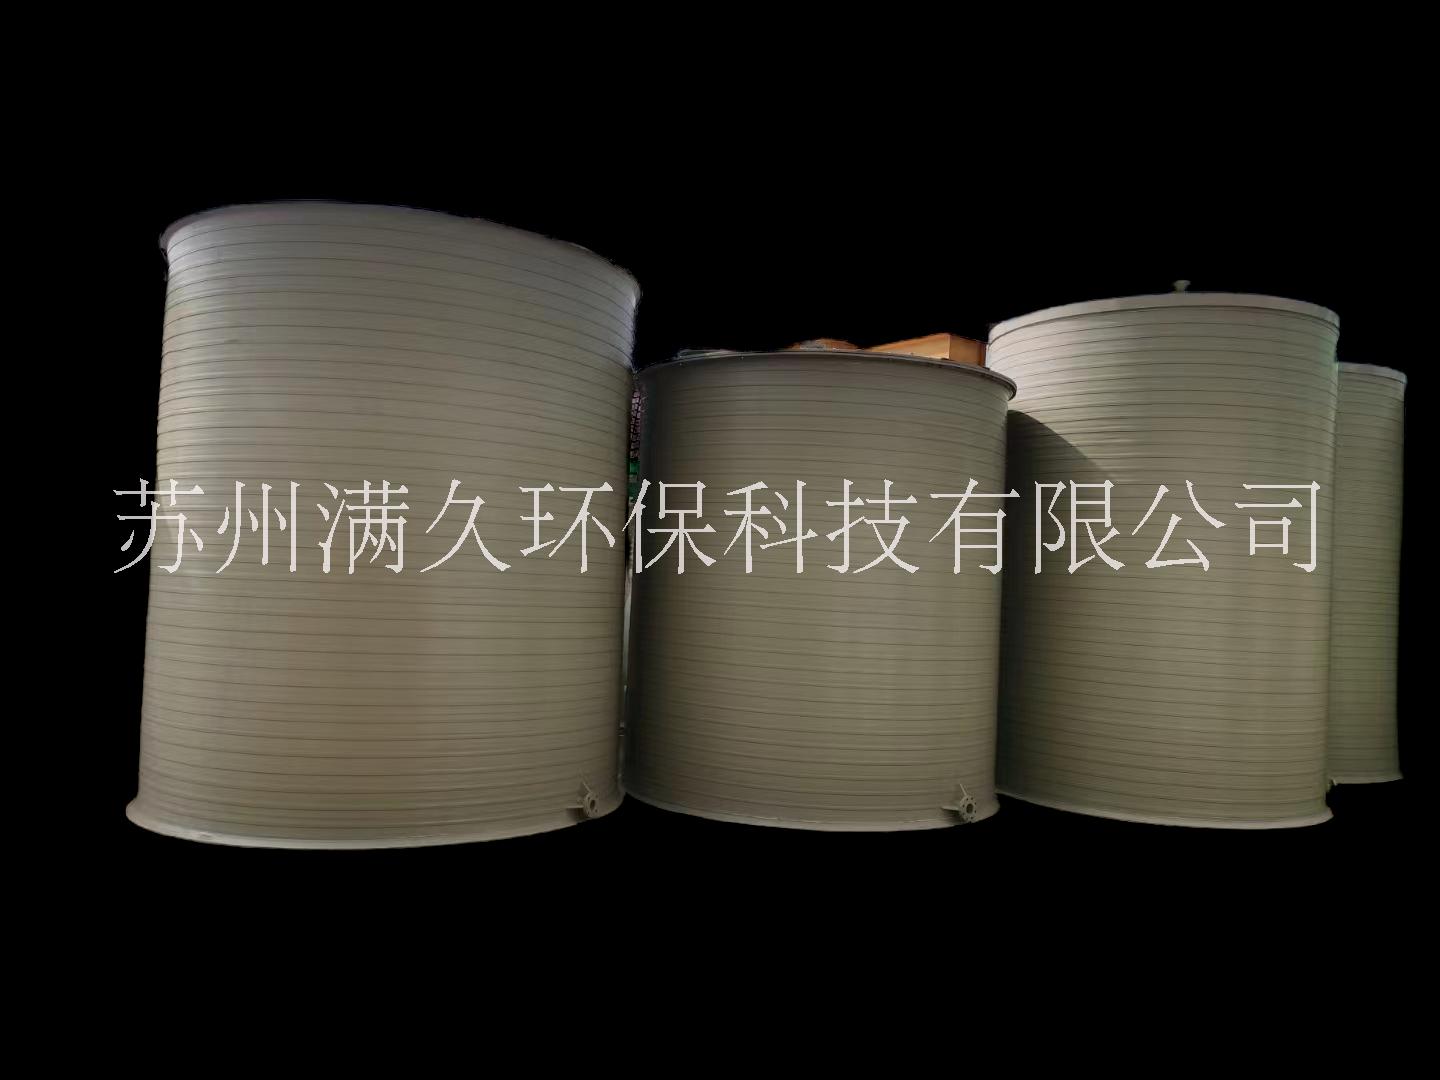 耐腐蚀 盐酸储罐、PPH储罐、PP缠绕储罐满久环保专业生产 聚丙烯储罐